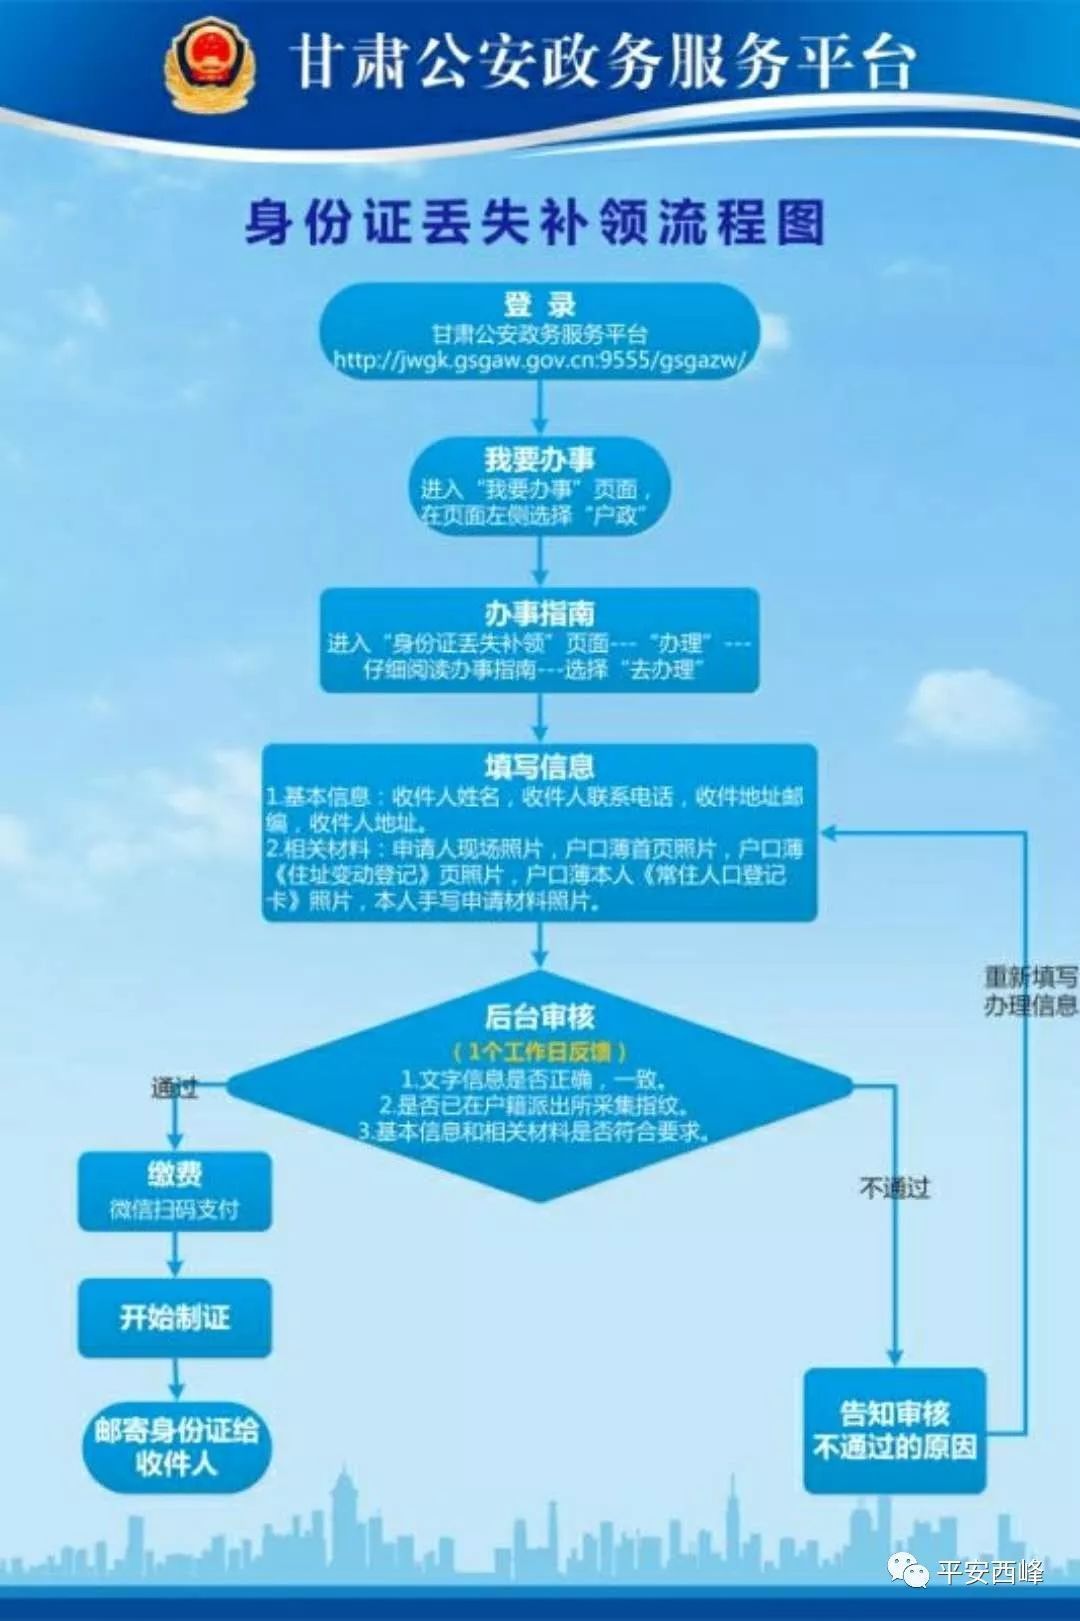 【便民利民】甘肃公安政务服务平台业务办理流程